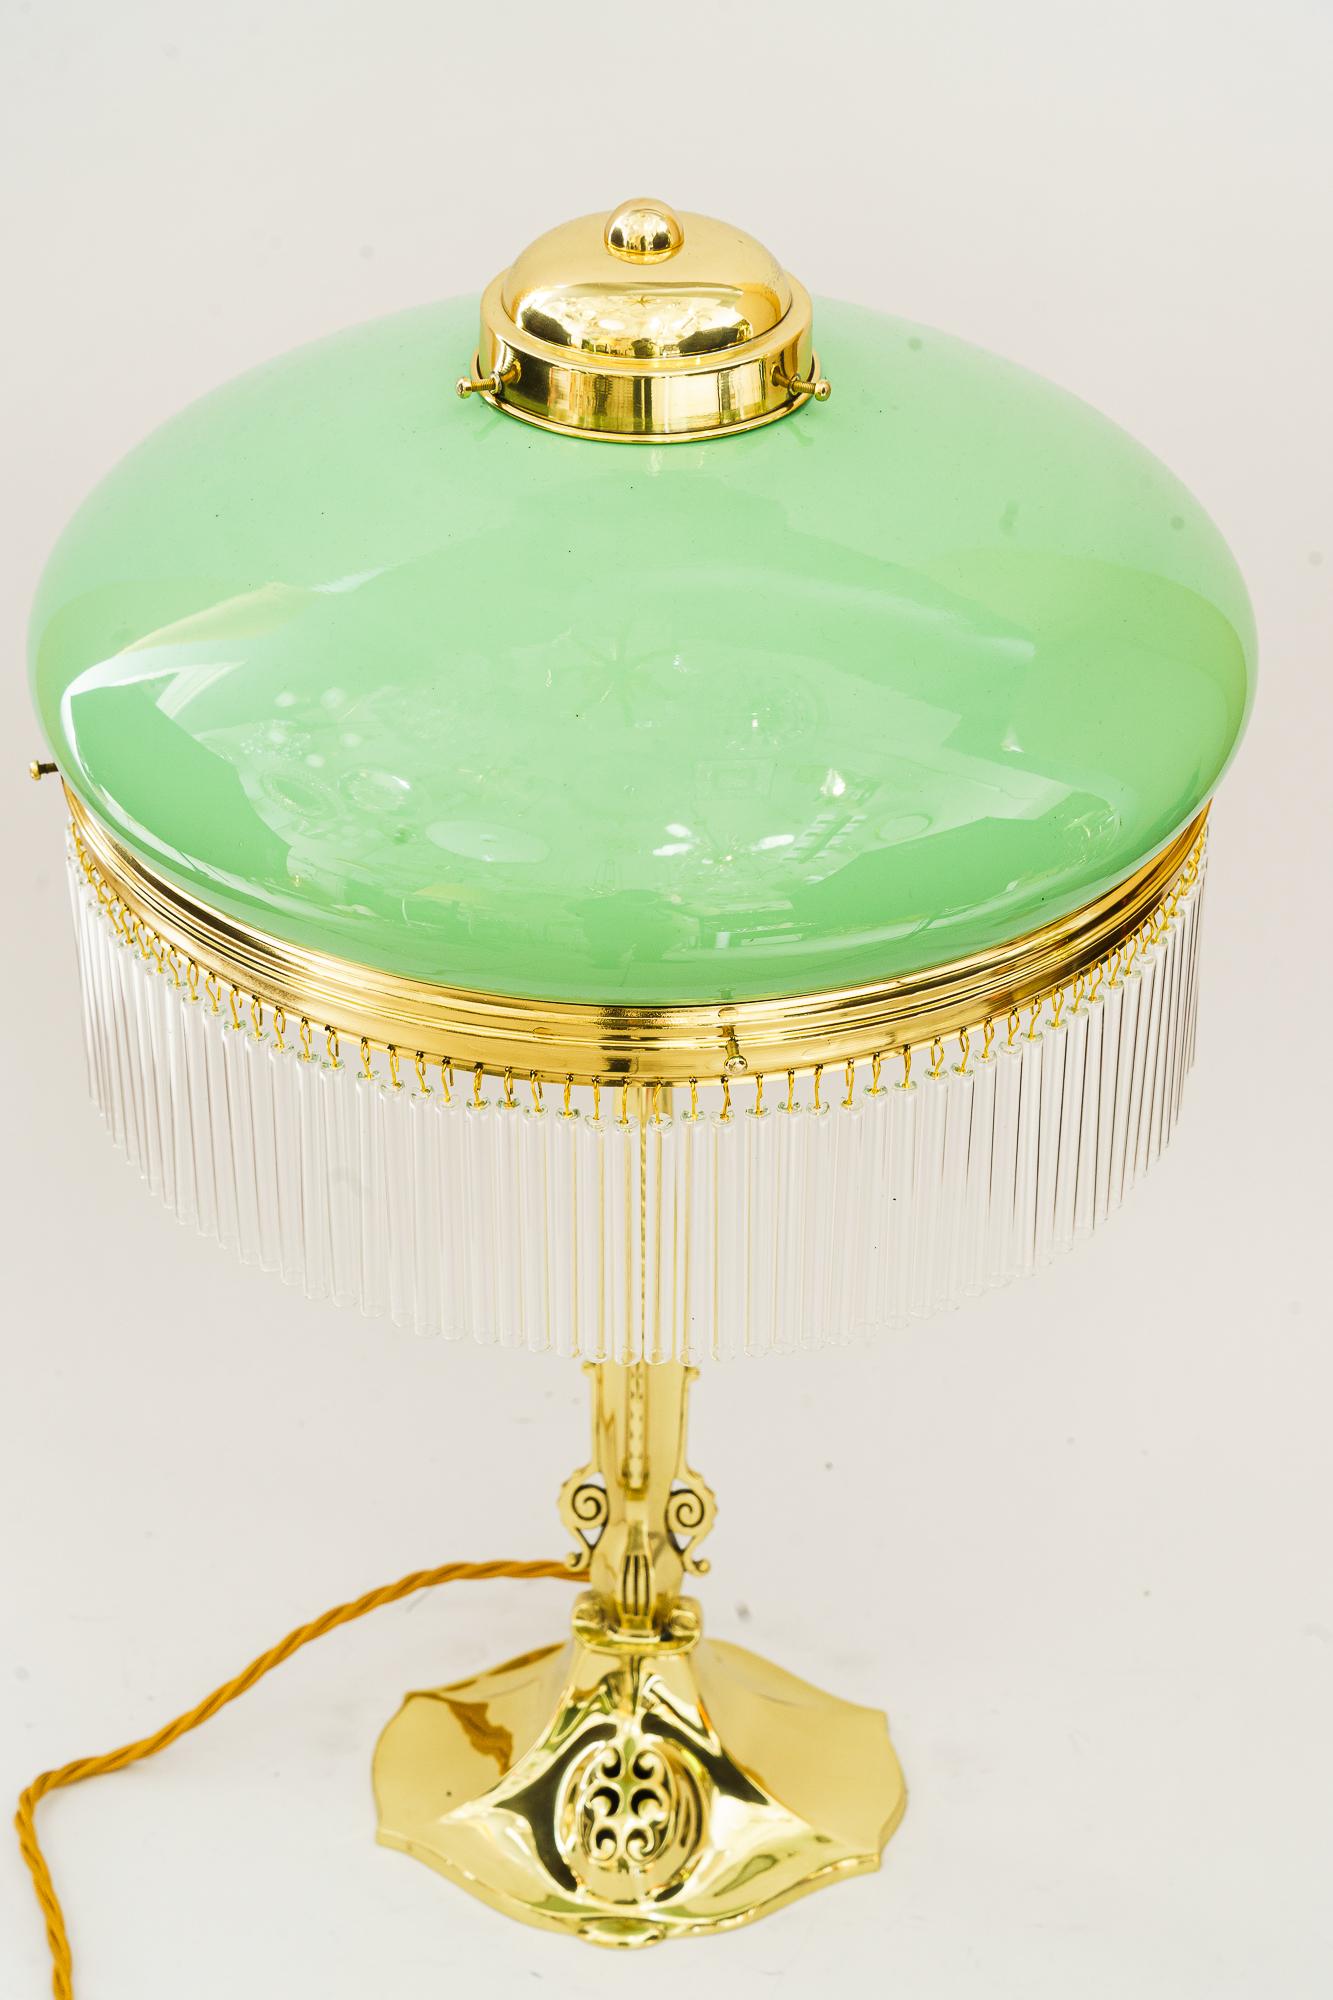 Jugendstil Tischlampe mit Opalglasschirm und Glasstäben Wien um 1910
Messing poliert und emailliert
Original Opalglas-Schirm
Die Glasstäbe werden ersetzt ( neu )